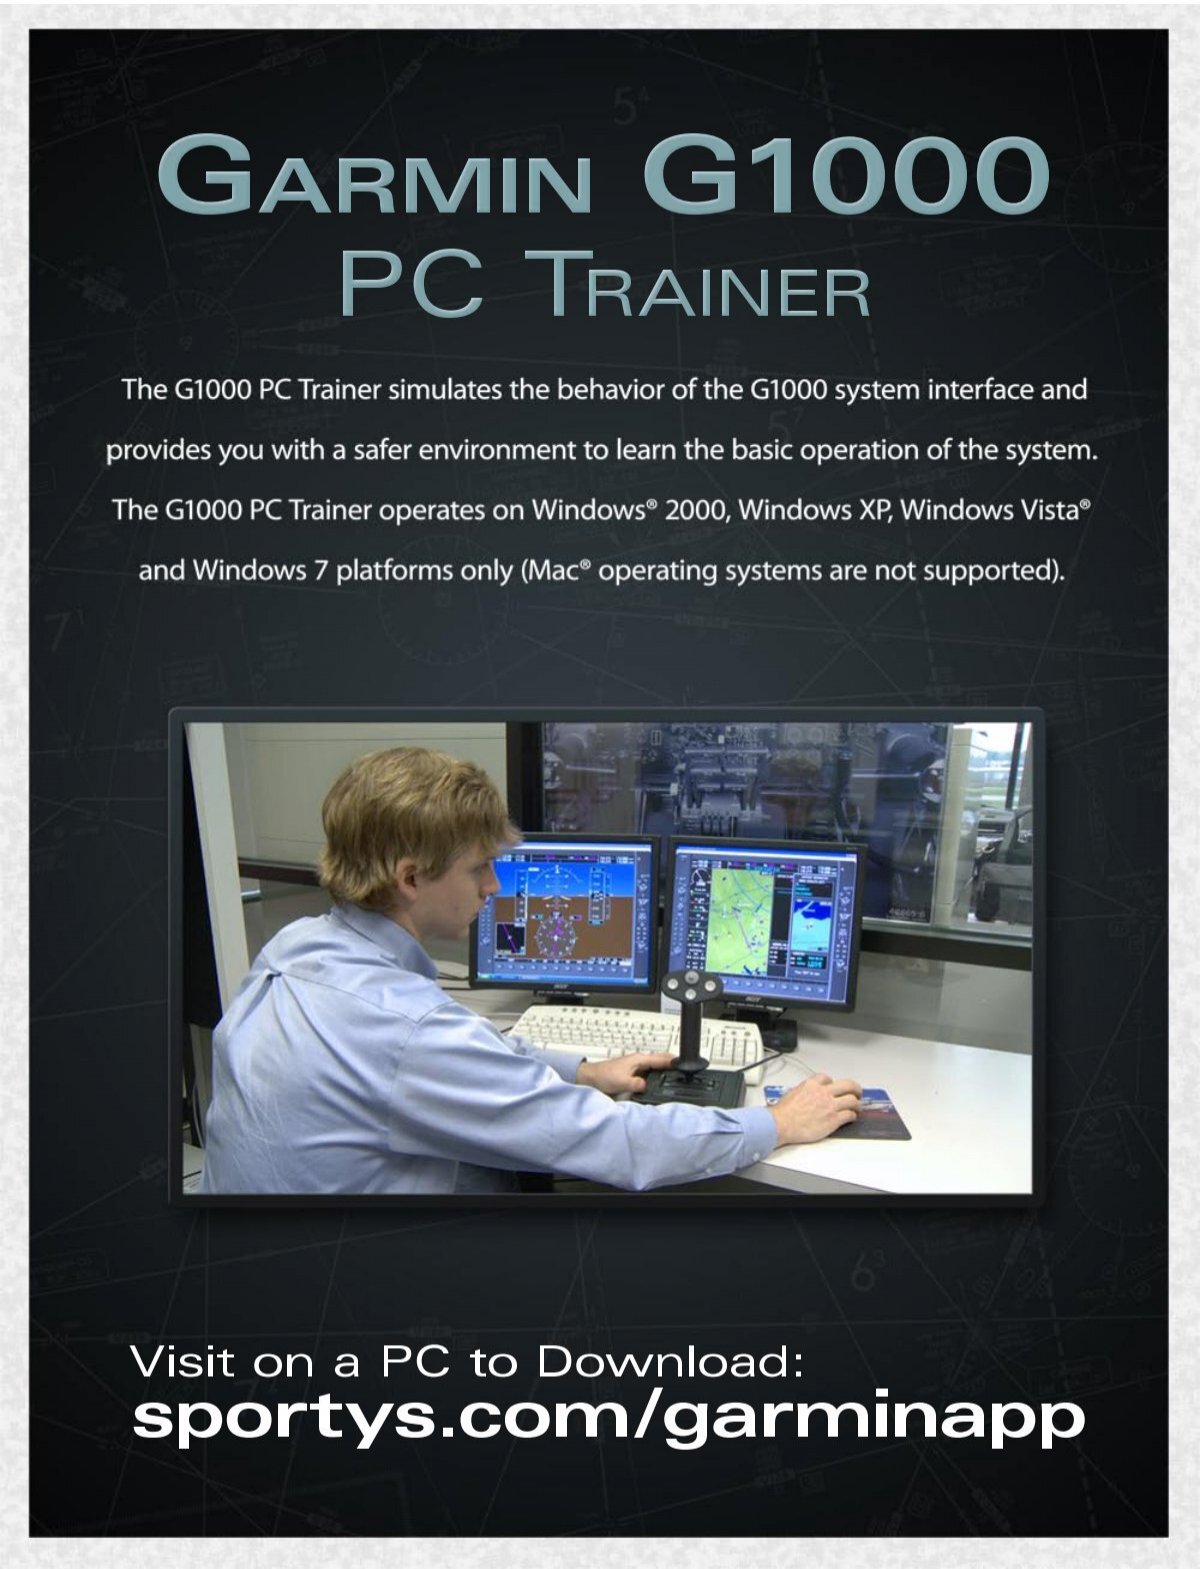 Garmin g1000 desktop trainer